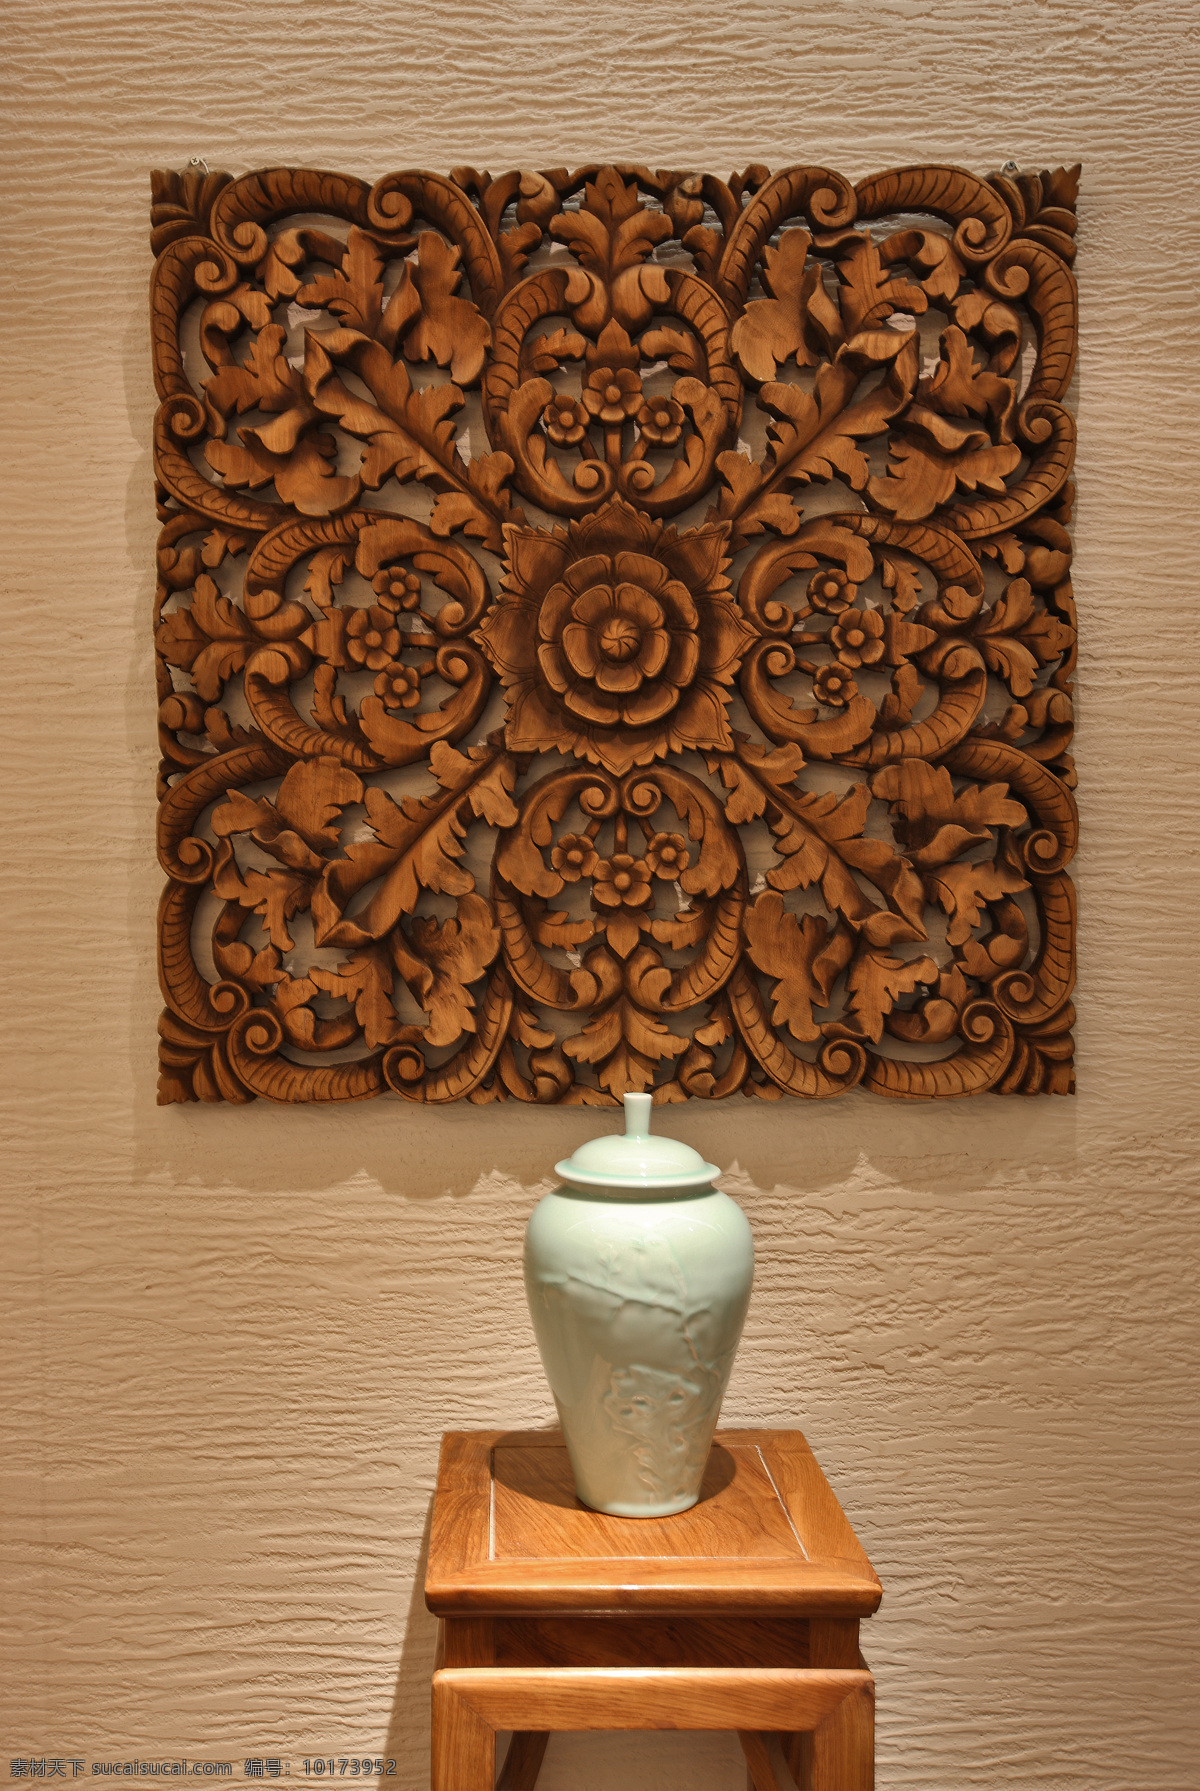 工艺品 桃木 花瓶 装修素材 中式风格 环境设计 室内设计 棕色